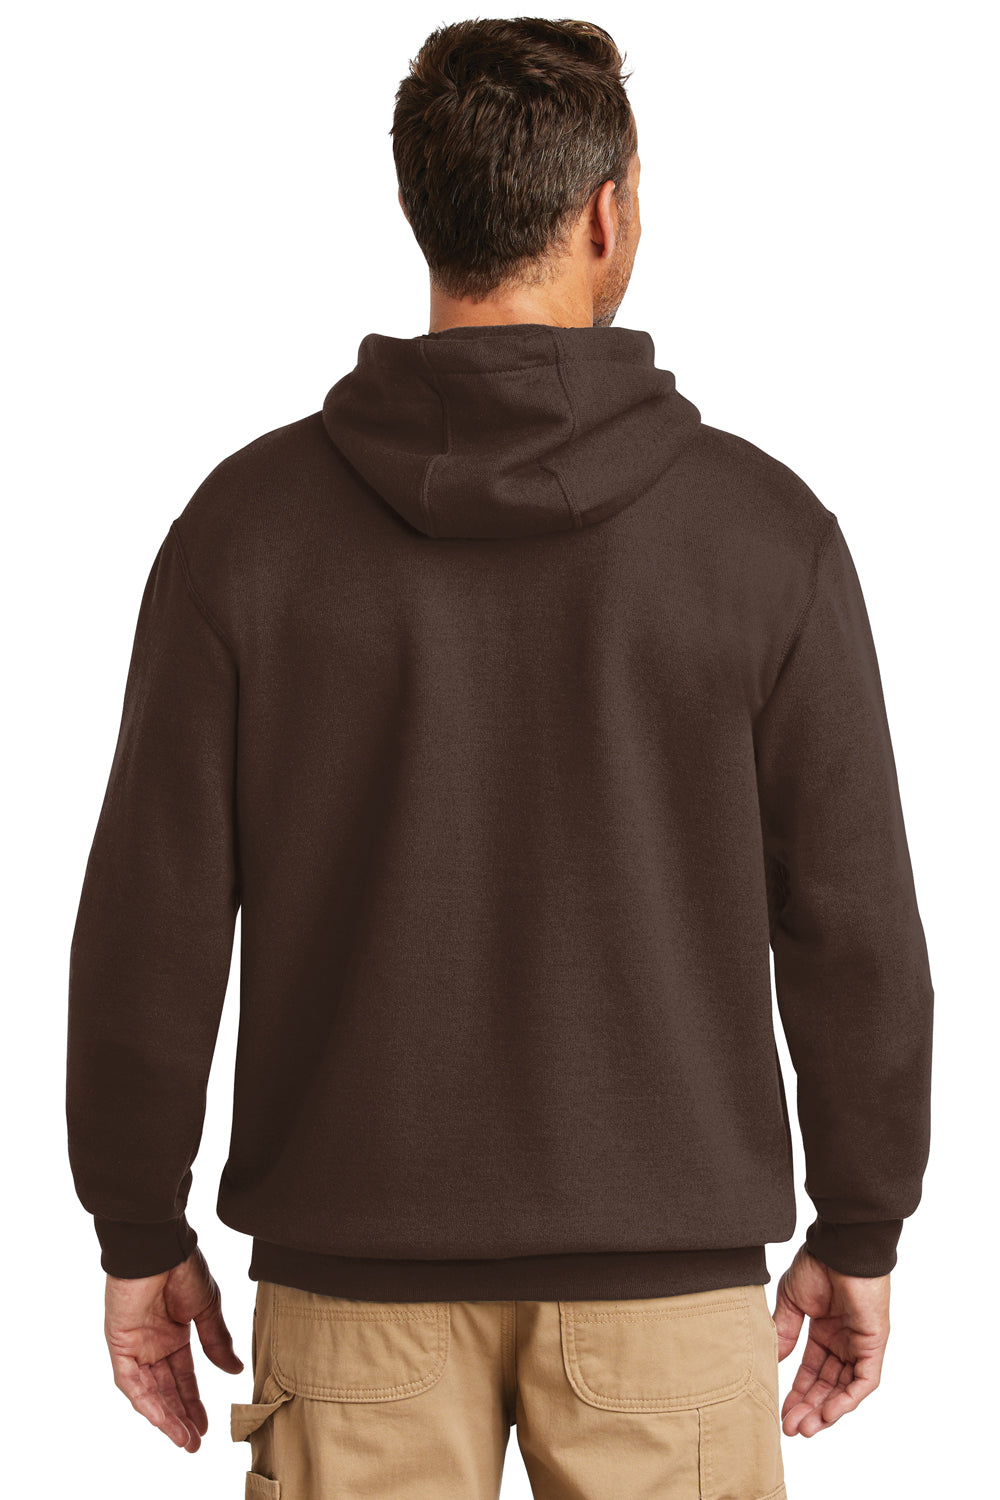 Carhartt CTK121 Mens Hooded Sweatshirt Hoodie Dark Brown Back